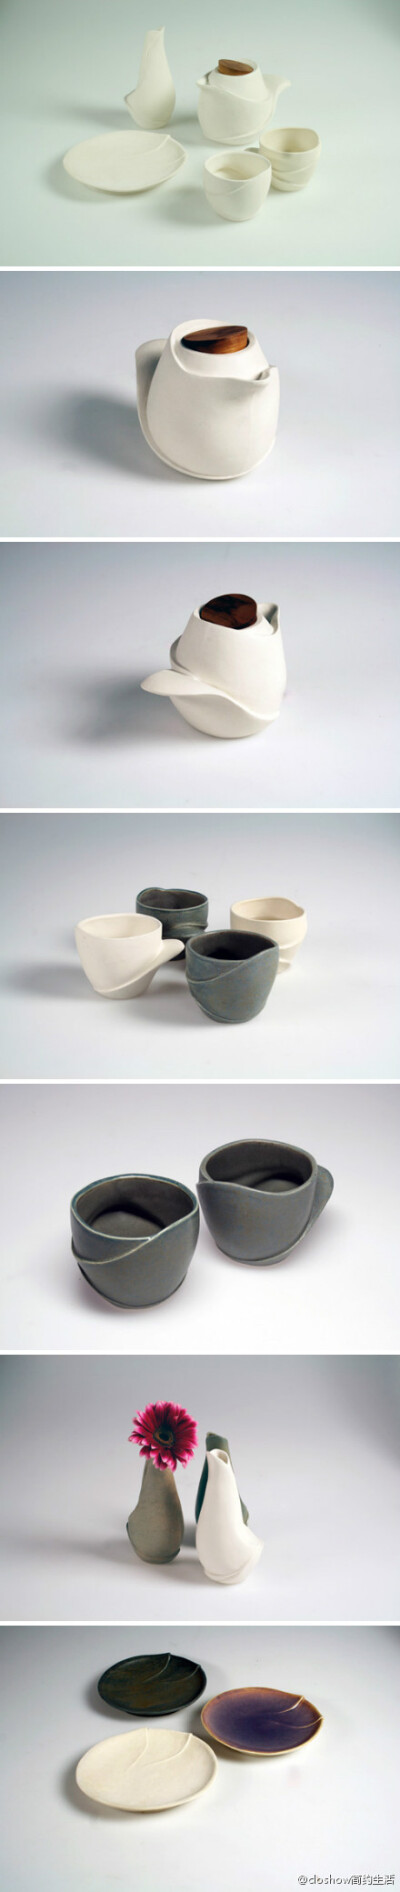 香港工业设计专业学生Patricia Wong设计制作的”Wavy”茶具。使用粘土和注浆的手法制成，线条流畅优美，如花瓣状层叠张开的外表代替常规的手柄，使手握时自然舒适。http://t.cn/zO2ZCzw